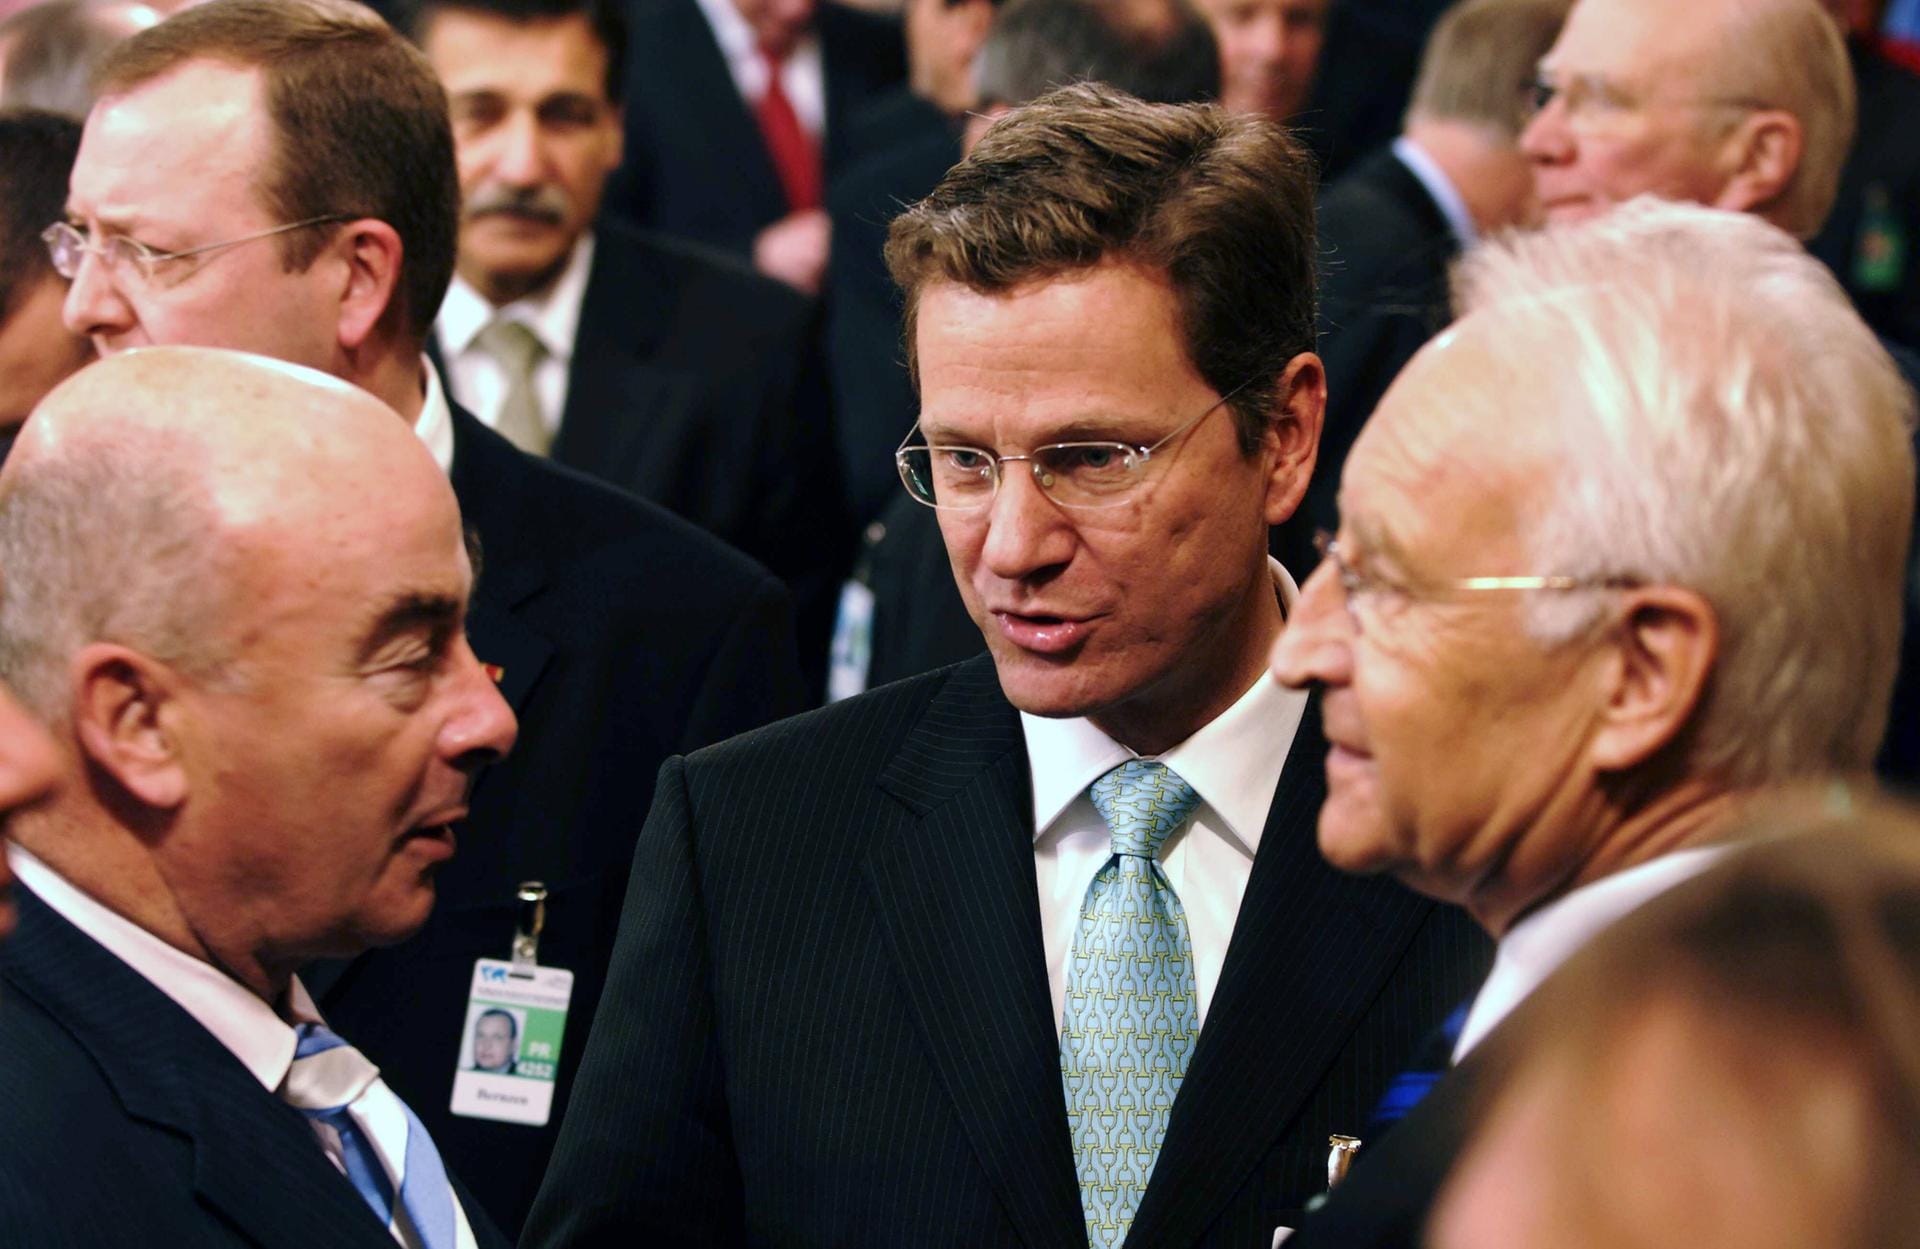 Februar 2007: Der Innenminister Brandenburgs neben Guido Westerwelle und Edmund Stoiber bei der Internationalen Sicherheitskonferenz in München.